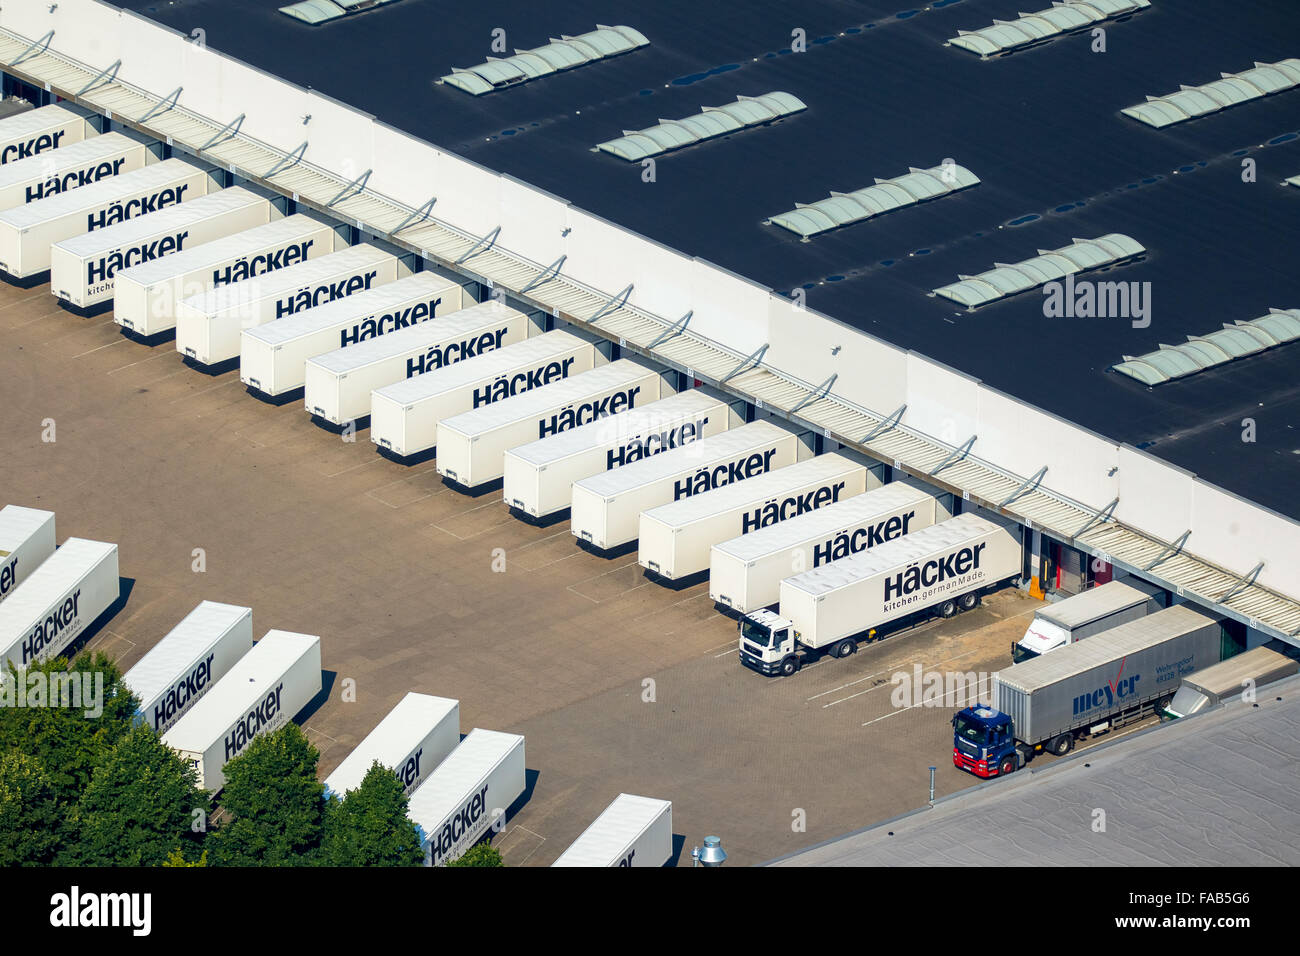 Vista aérea de Westfalia Oriental, fábrica de muebles, los hackers con numerosos camiones y semirremolques remolques de extradición, muebles Foto de stock